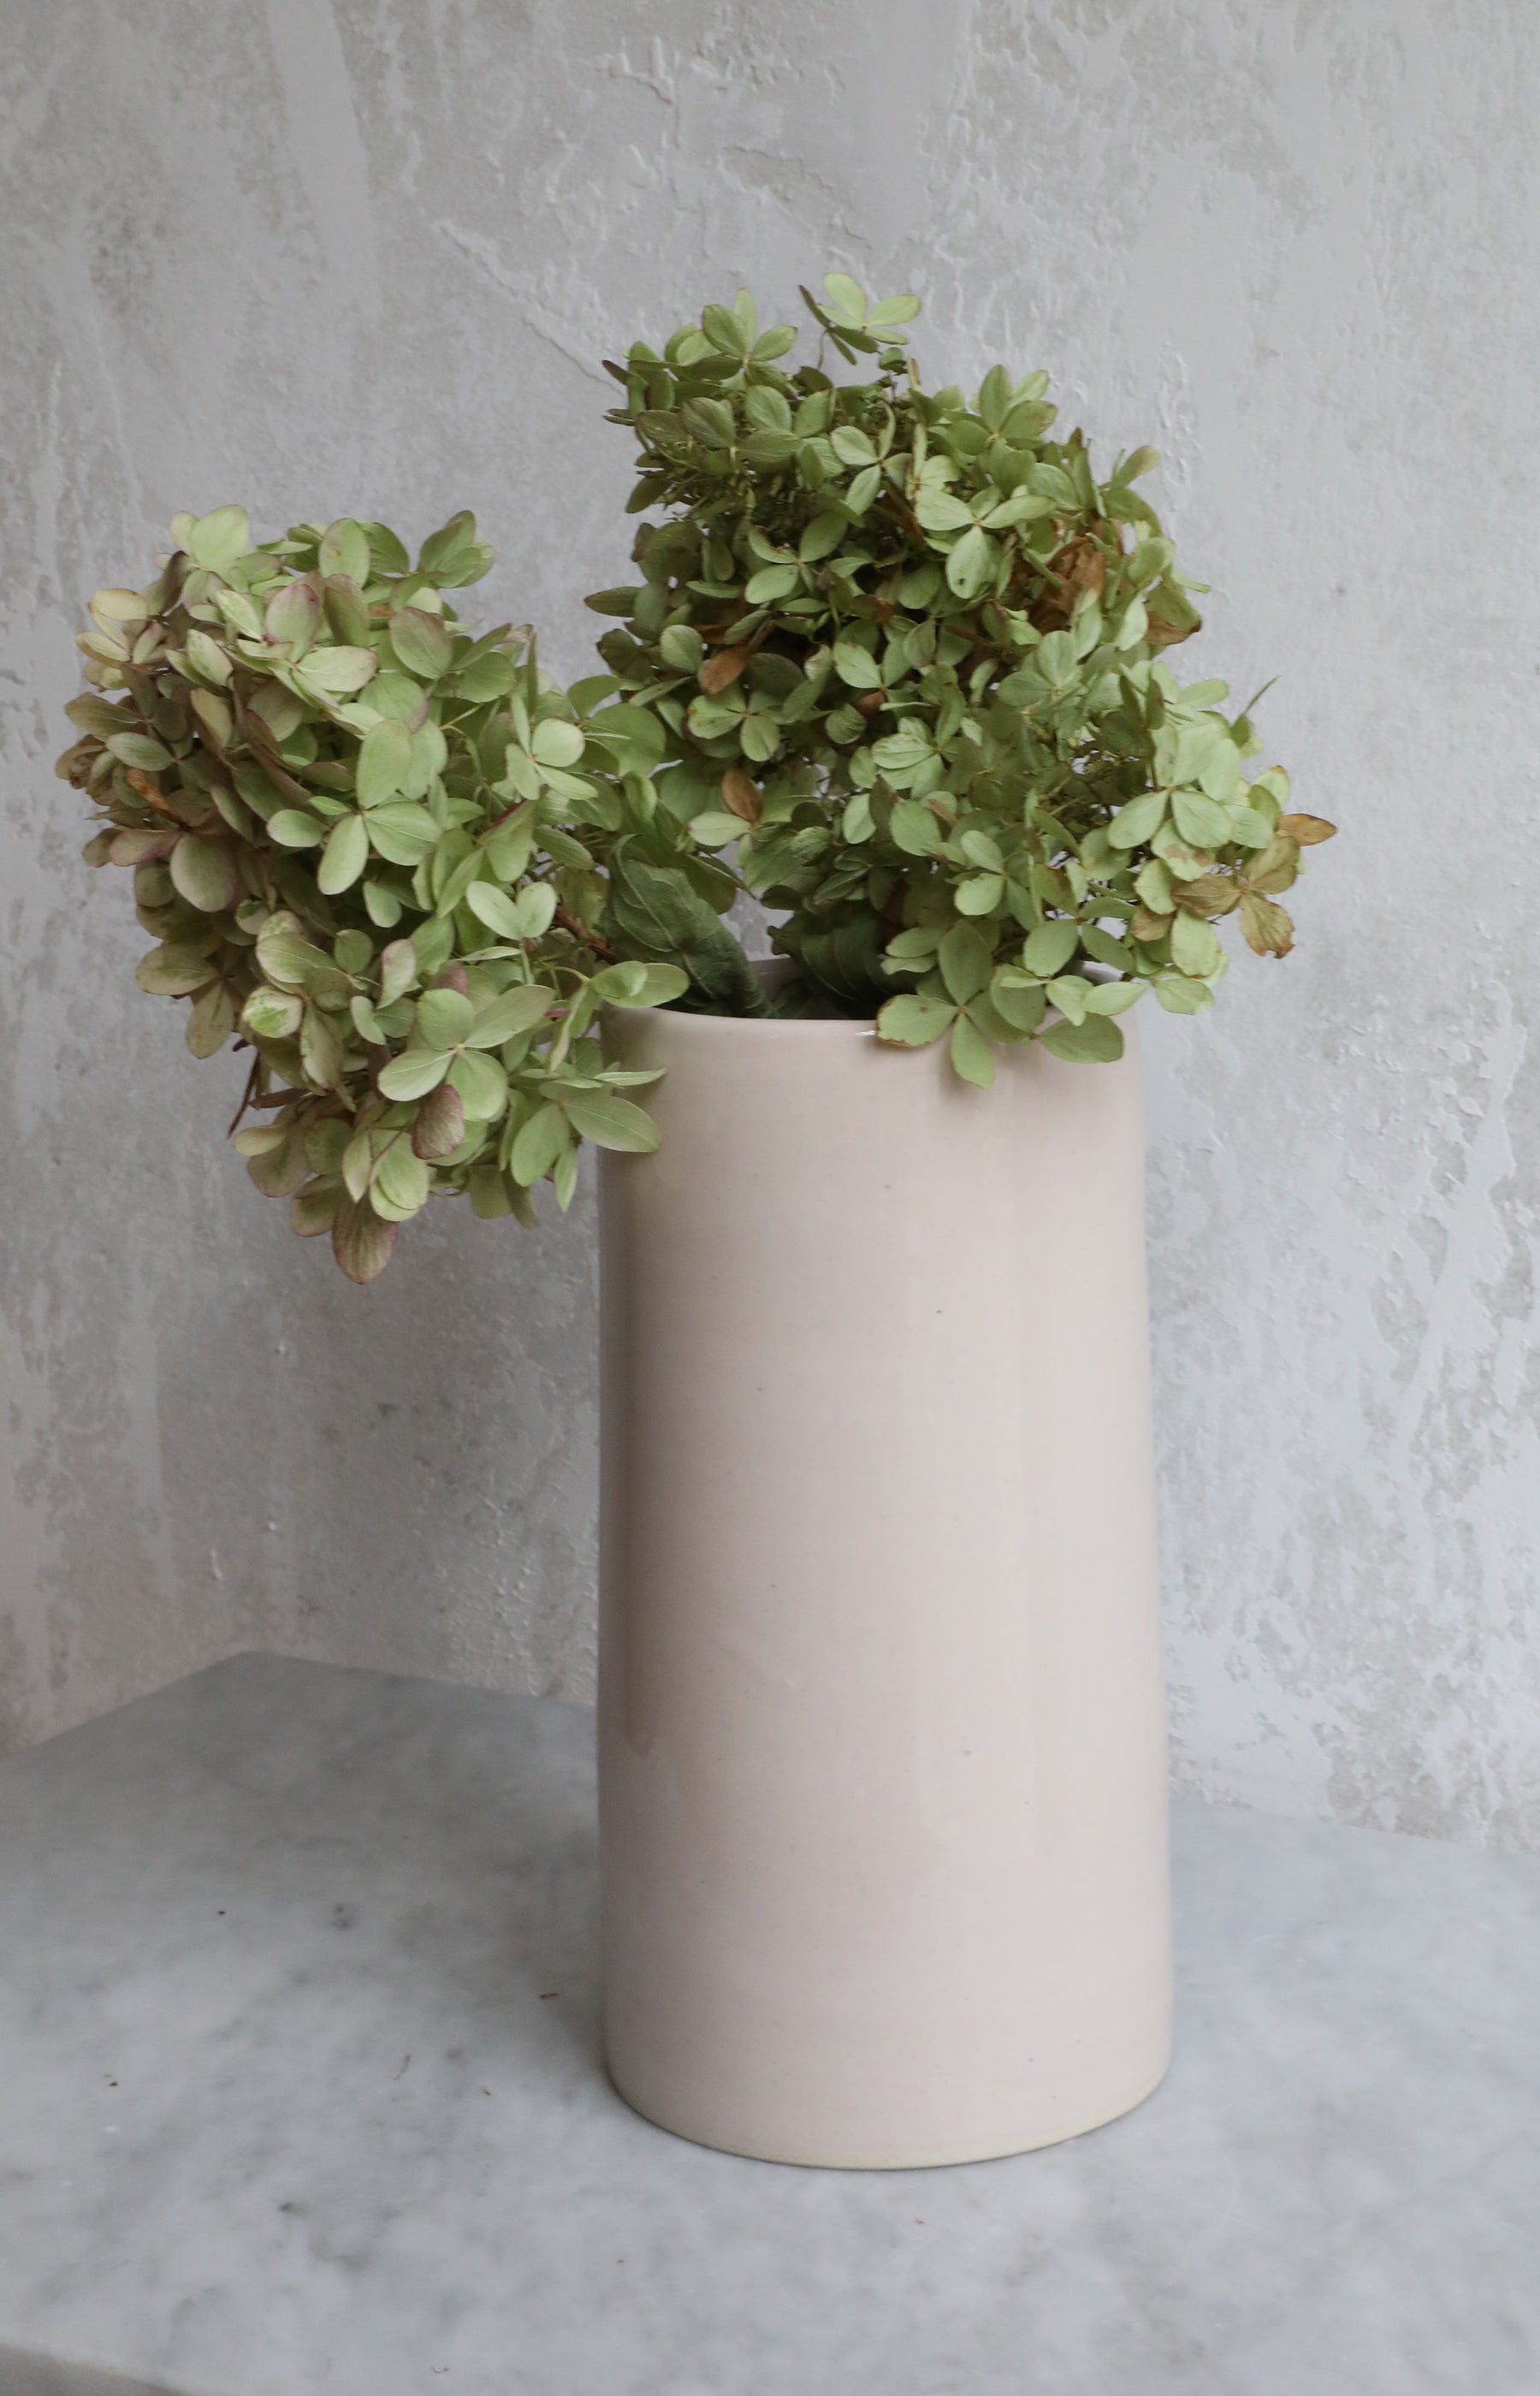 Shiny Blush Ceramic Vase